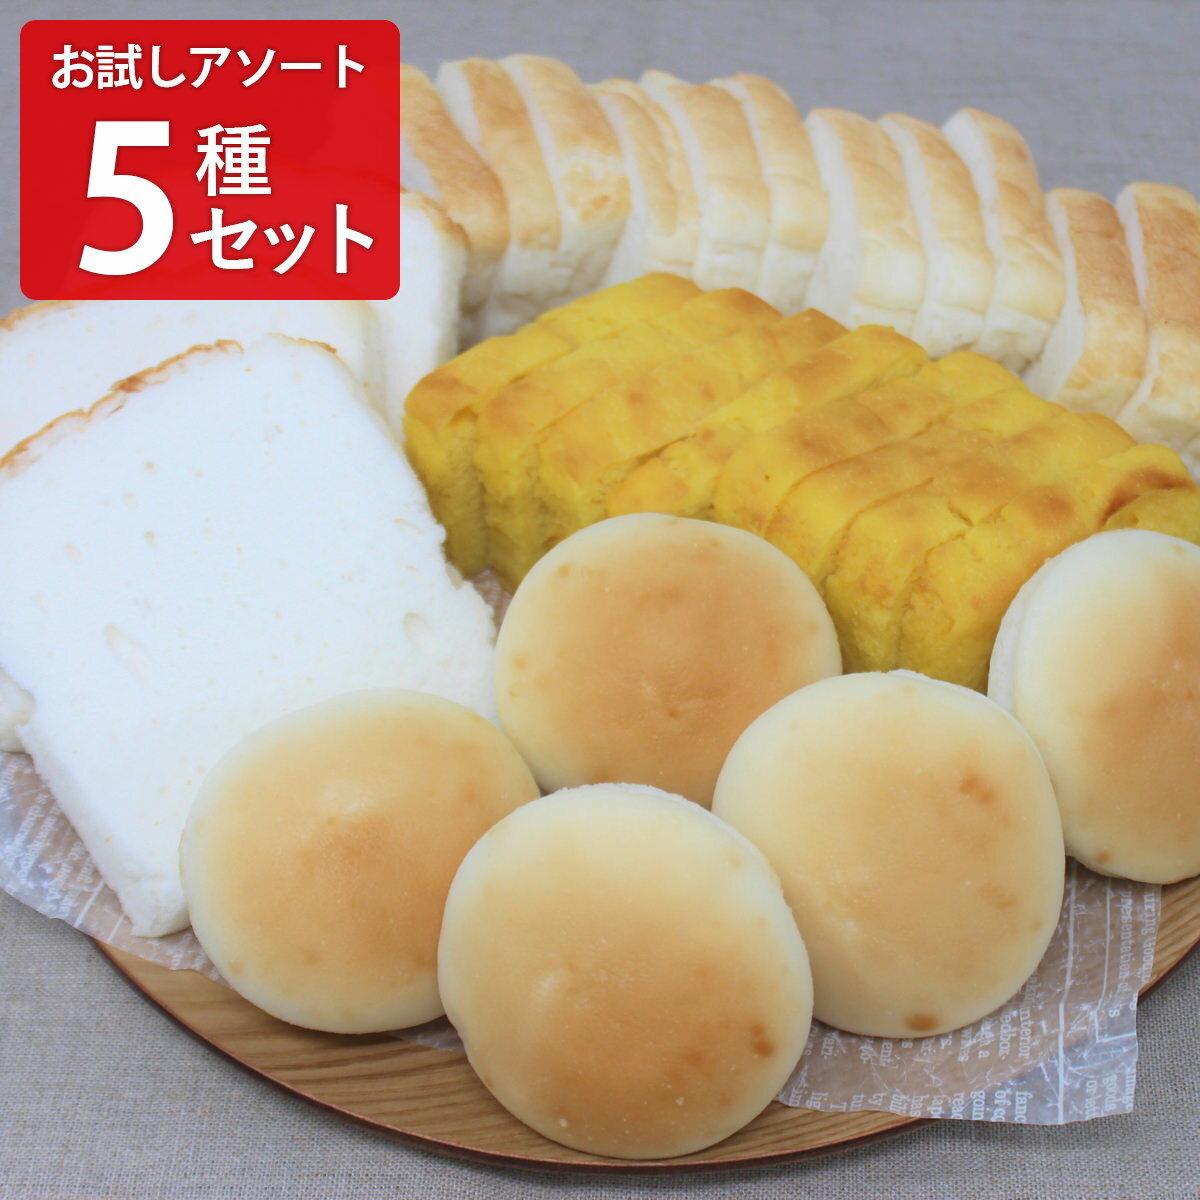 みんなの食卓 米粉パン お試しアソート5種セット パン グルテンフリー 米粉パン 冷凍パン 食パン 食事パン アレルギー対応 お米パン